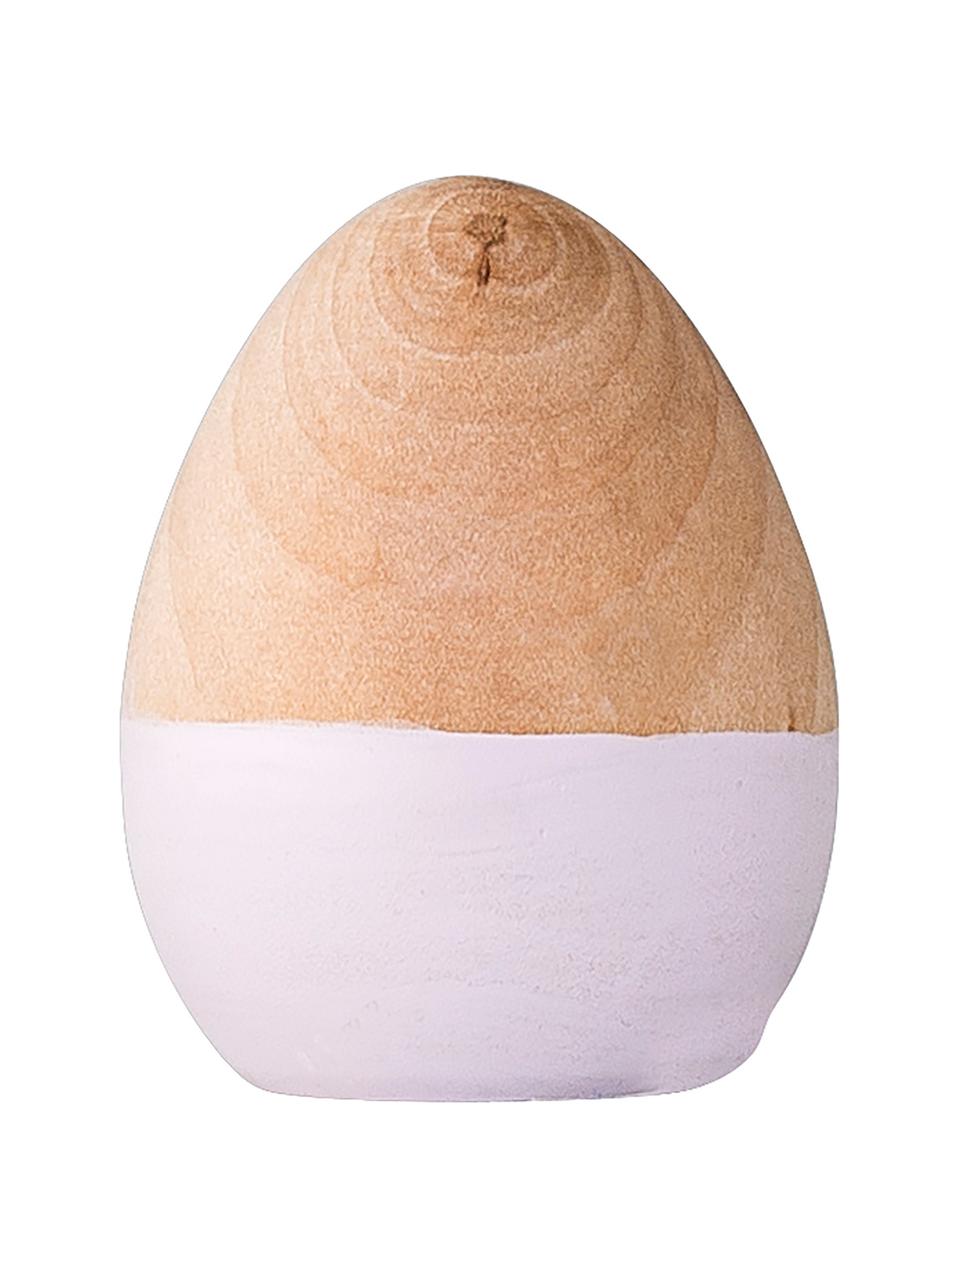 Dekorativní vejce Nature, Bříza, Světle hnědá, bílá, Ø 4 cm, V 5 cm